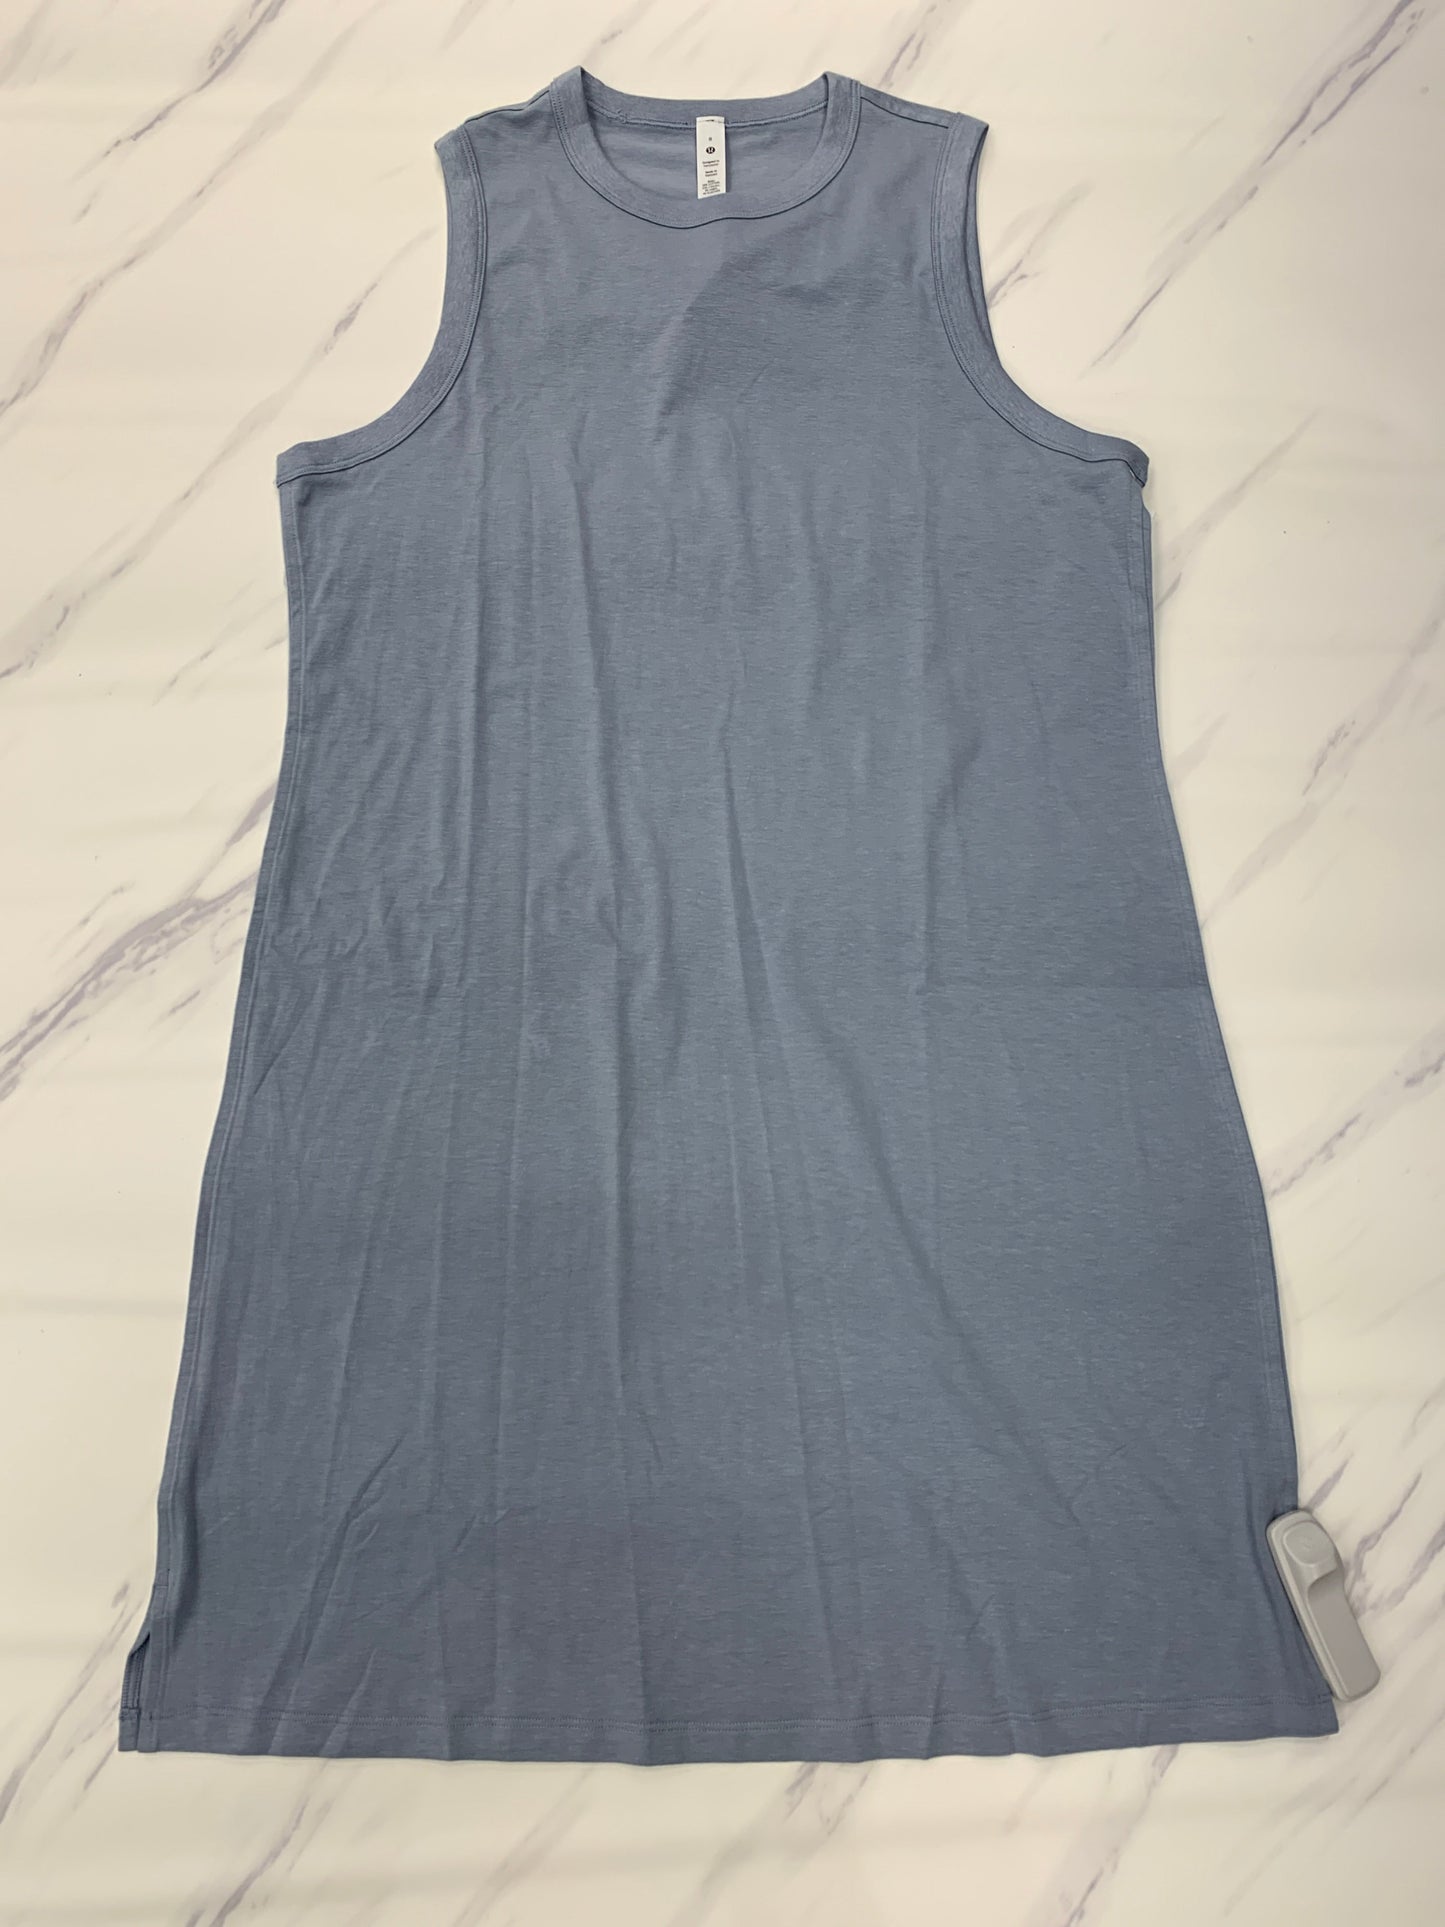 Blue Athletic Dress Lululemon, Size 8